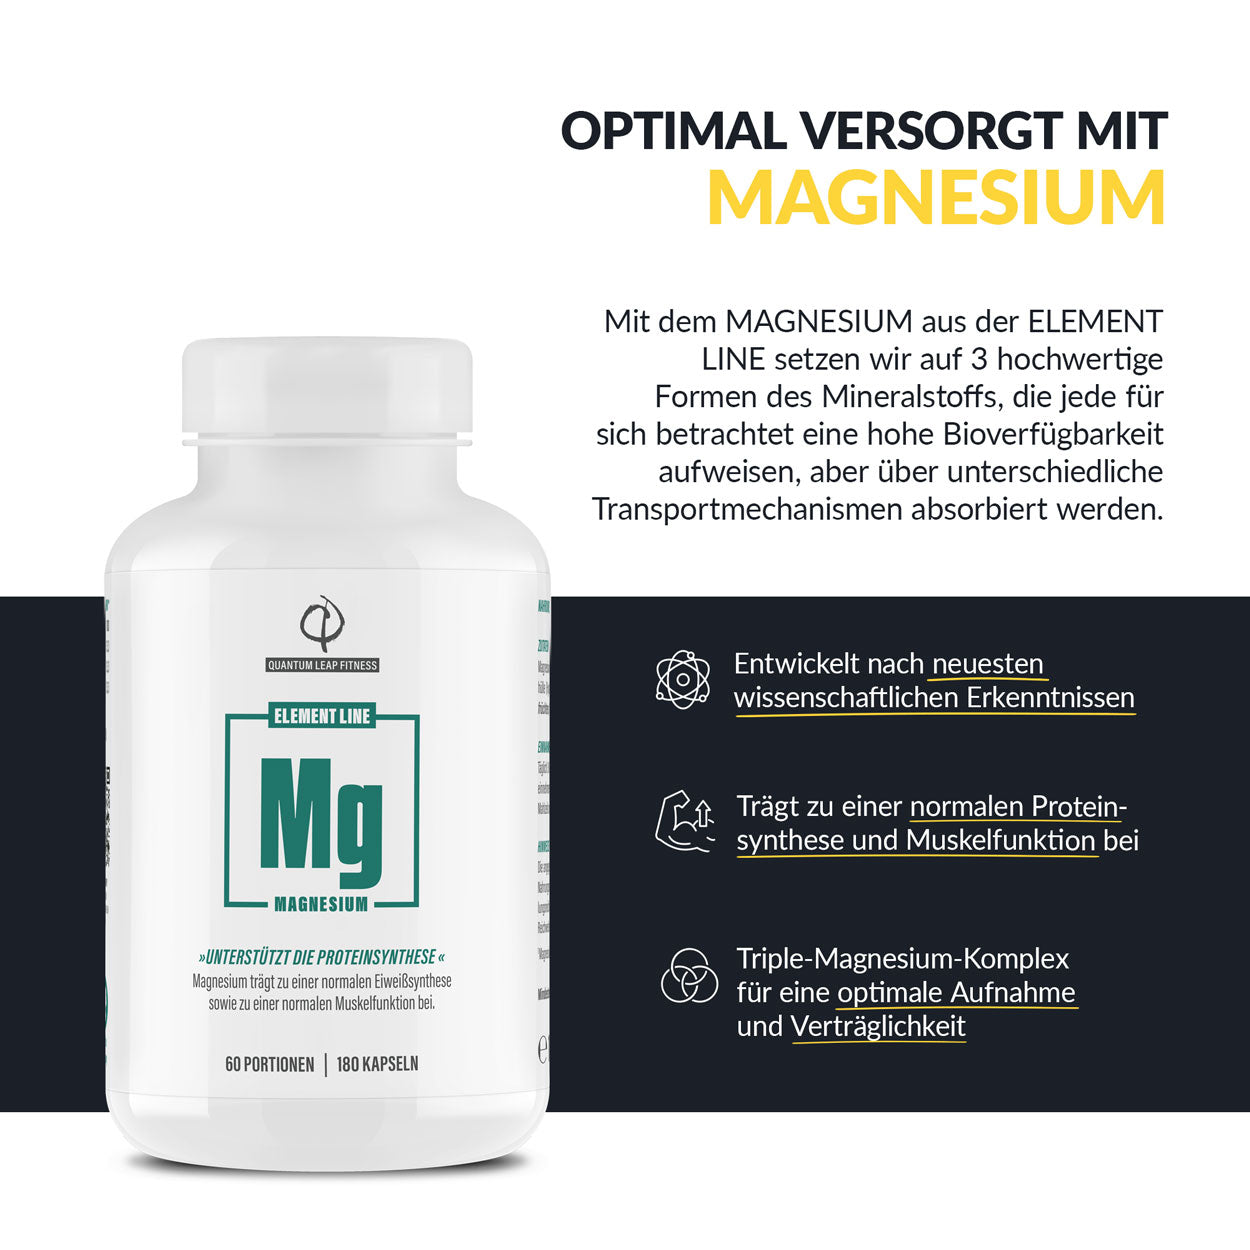 Magnesium Vorteile